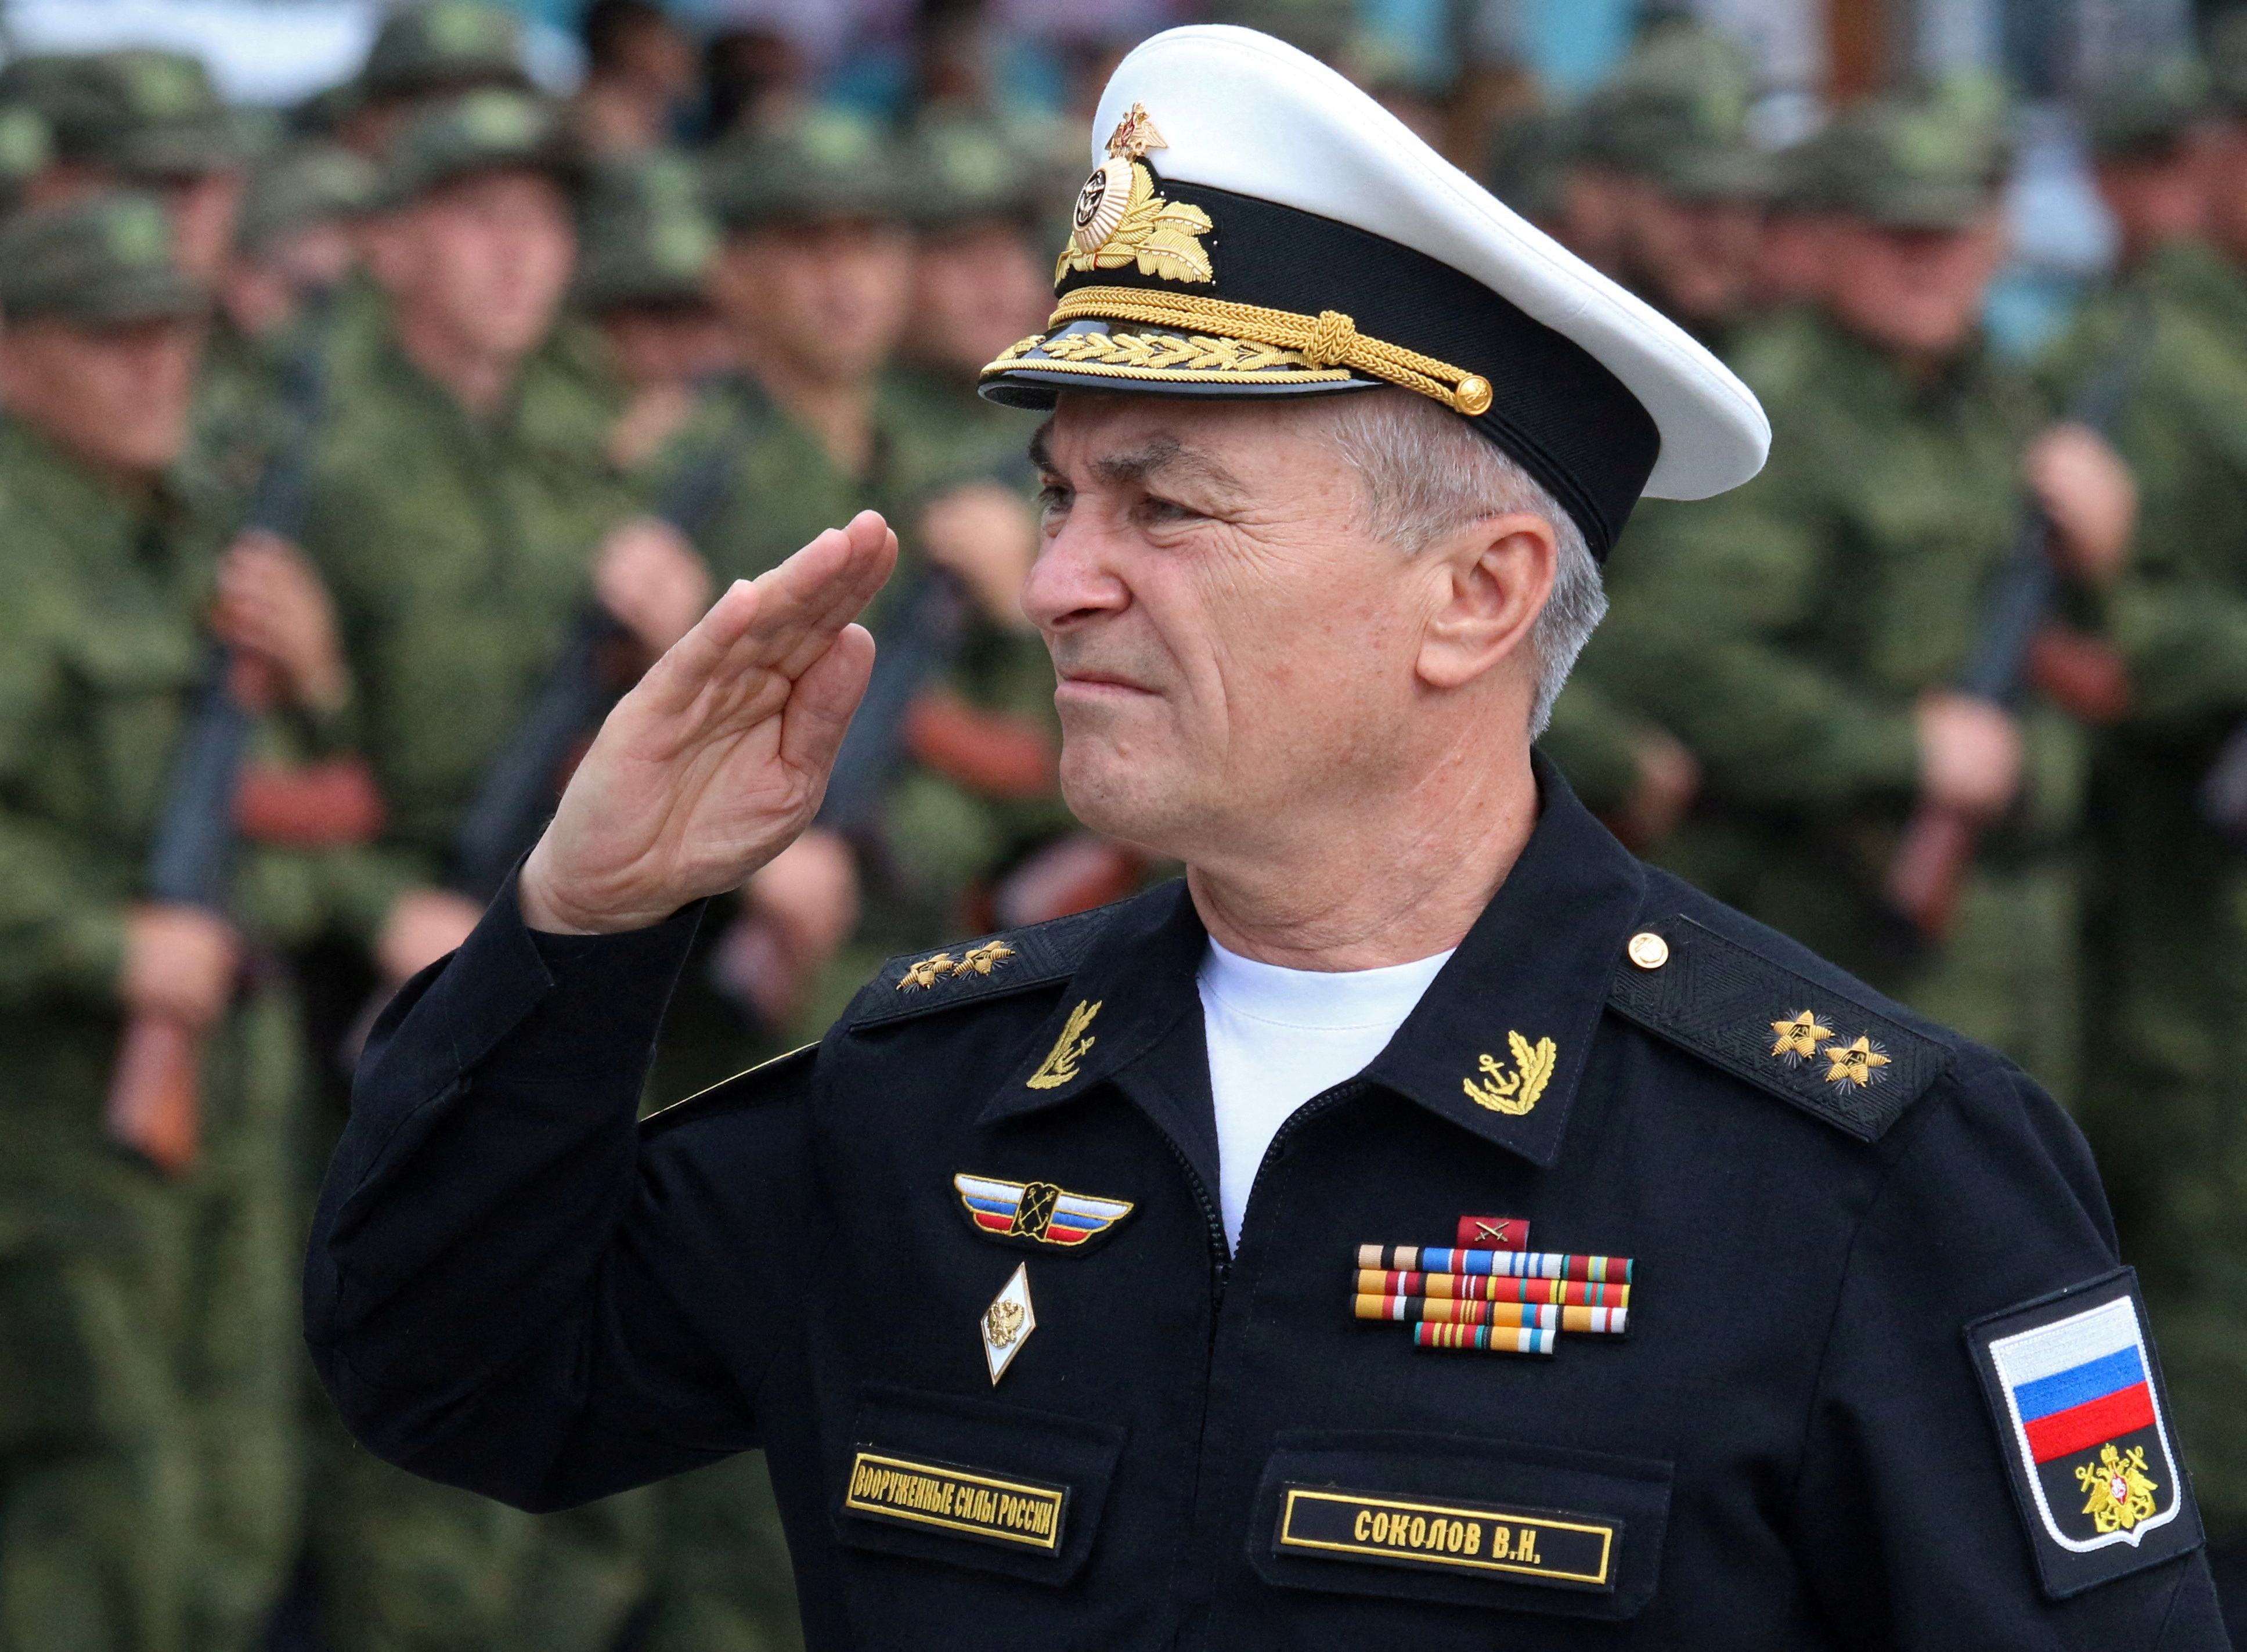 Kommandeur Viktor Sokolov kam bei dem Angriff ums Leben, der vermutlich von russischen Marineoffizieren geahndet worden war